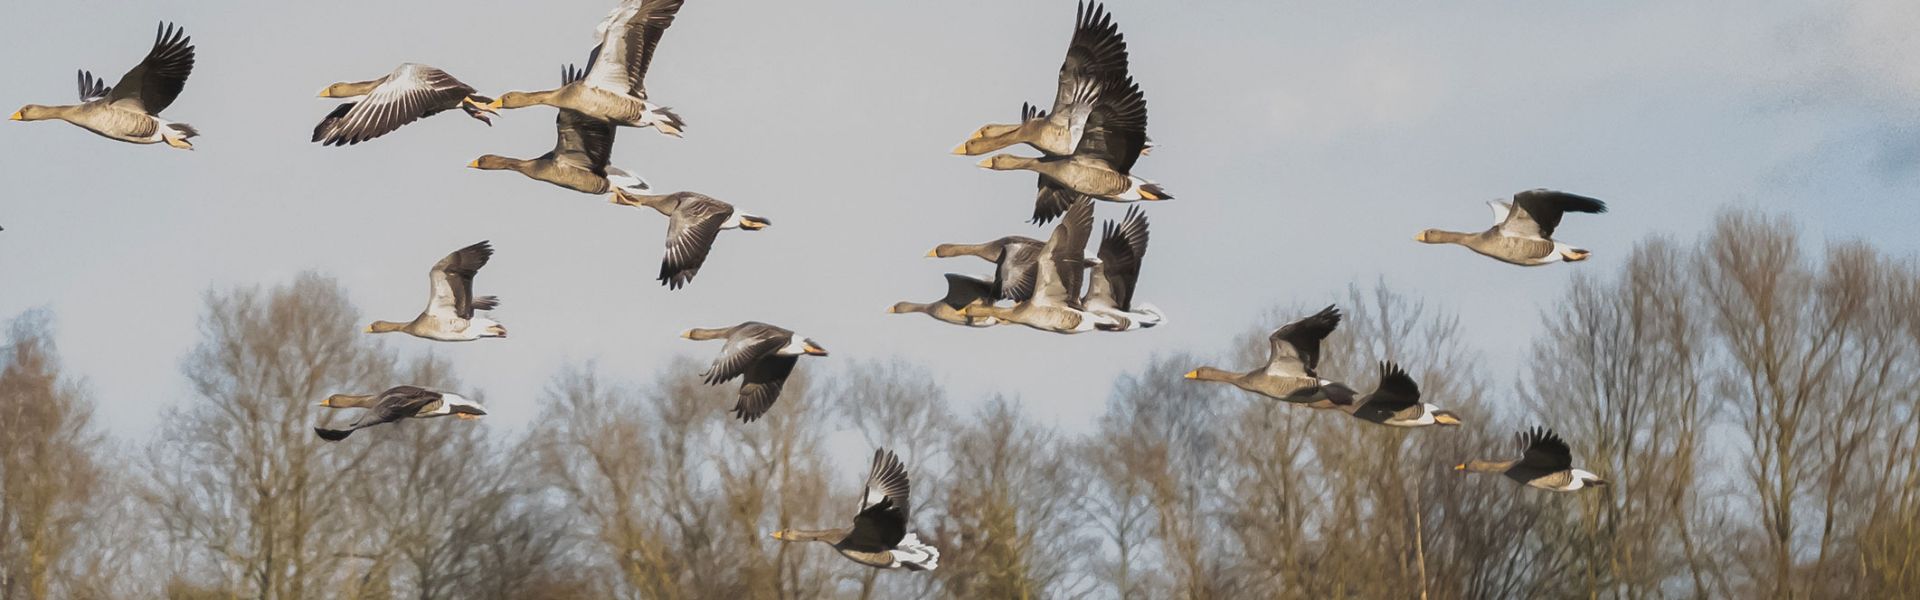 Migration oiseaux sauvages